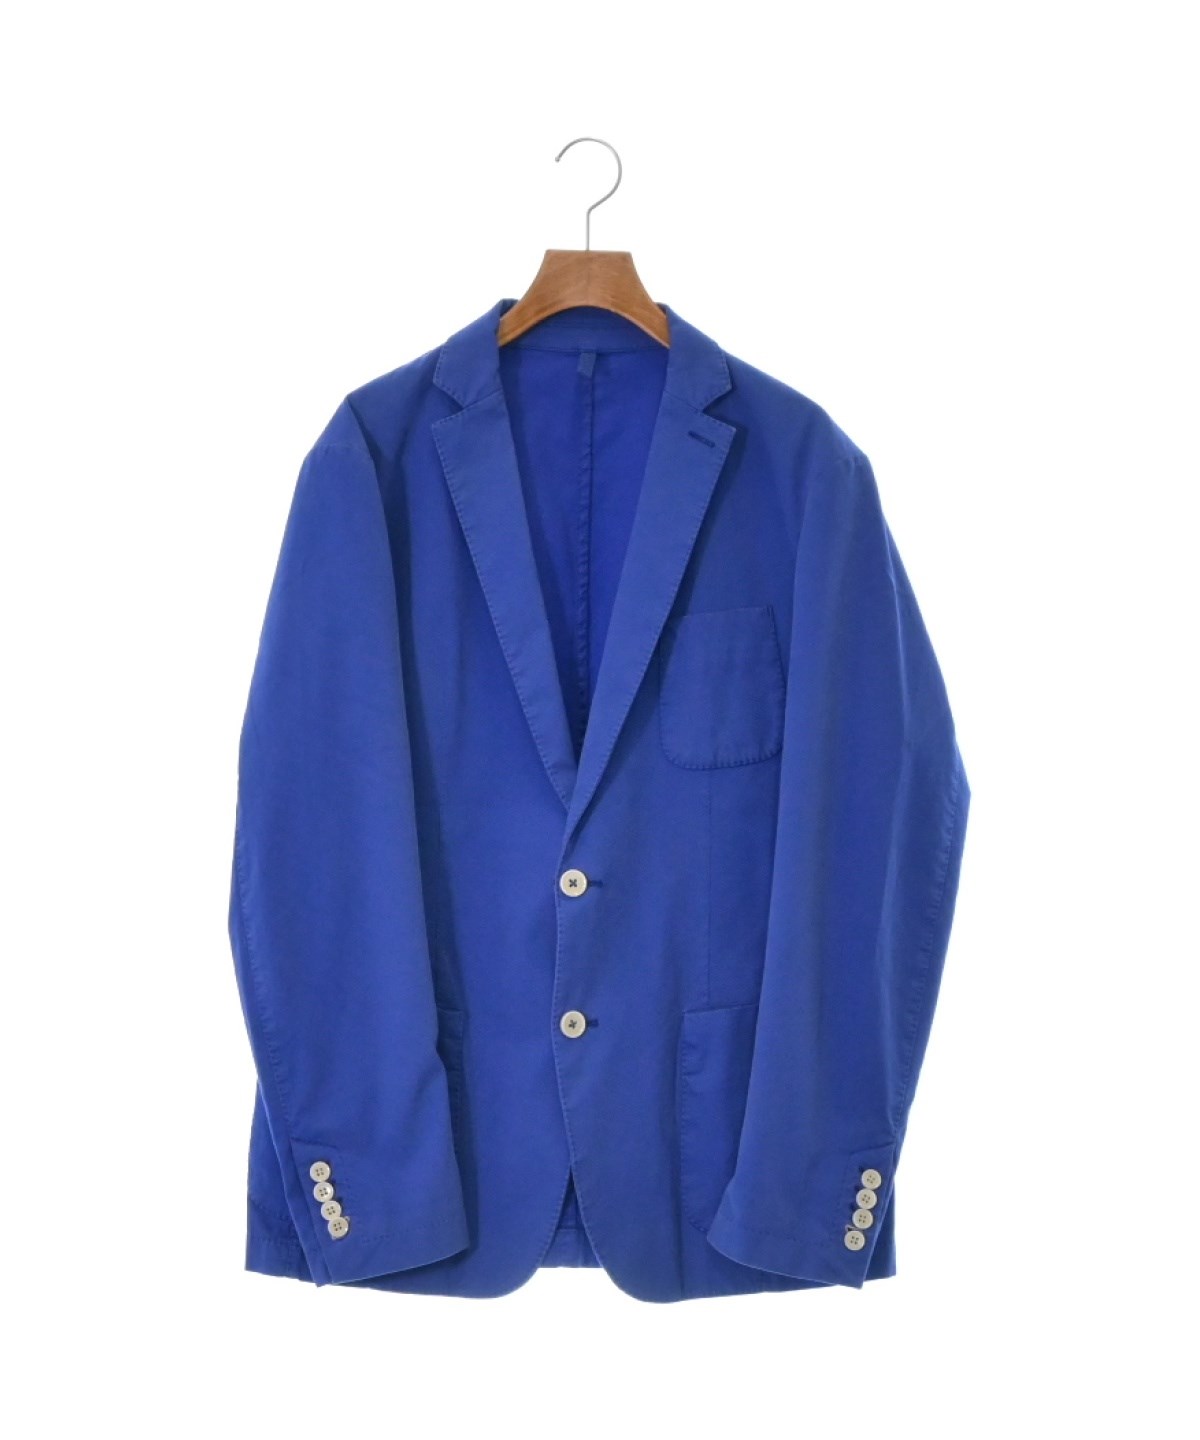 HUGO BOSSヒューゴボステーラードジャケット 青 サイズ:L